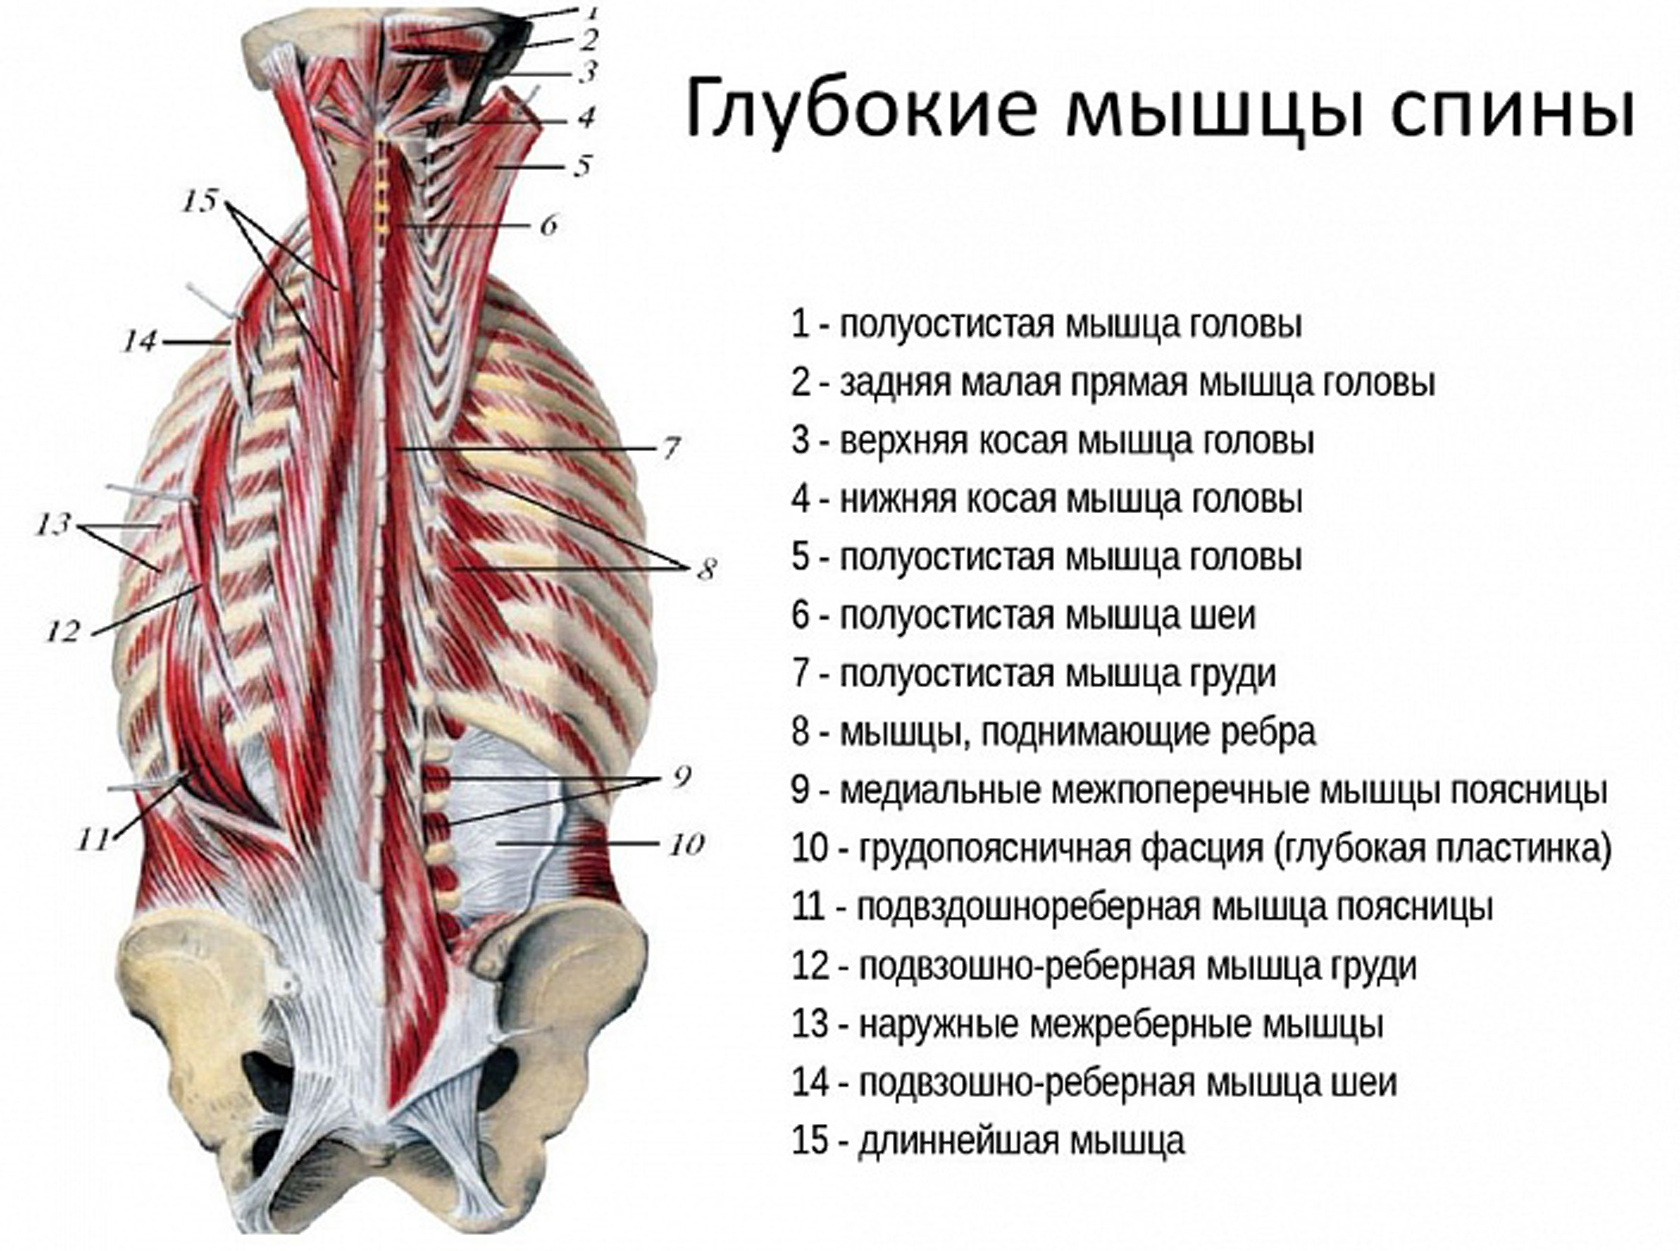 Поясница какие мышцы. Мышцы спины поверхностные и глубокие слои анатомия. Поверхностный слой глубоких мышц спины. Мышцы спины второй глубокий слой.